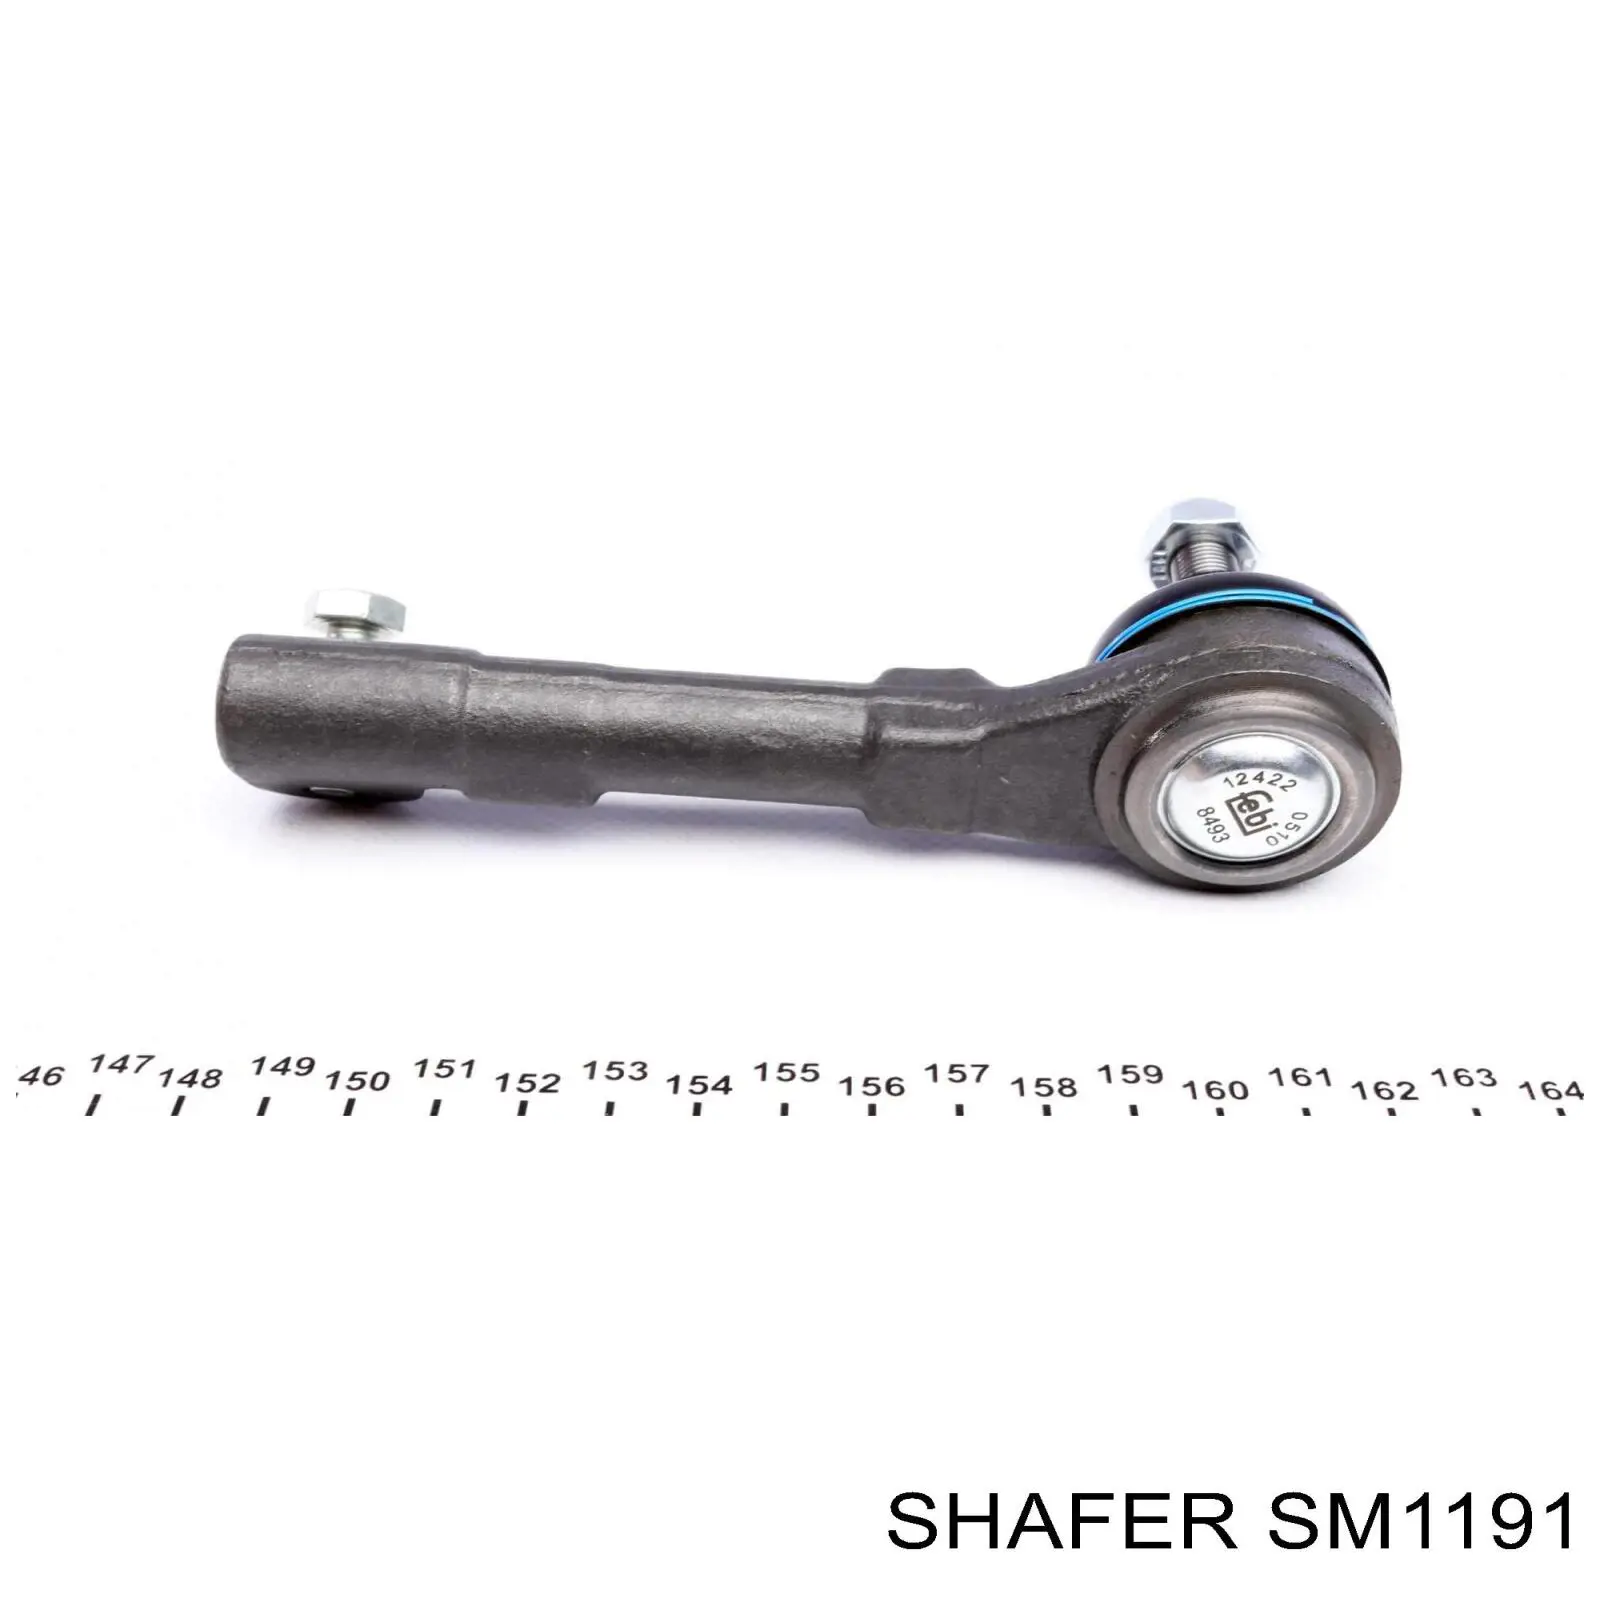 SM1191 Shafer rótula barra de acoplamiento exterior